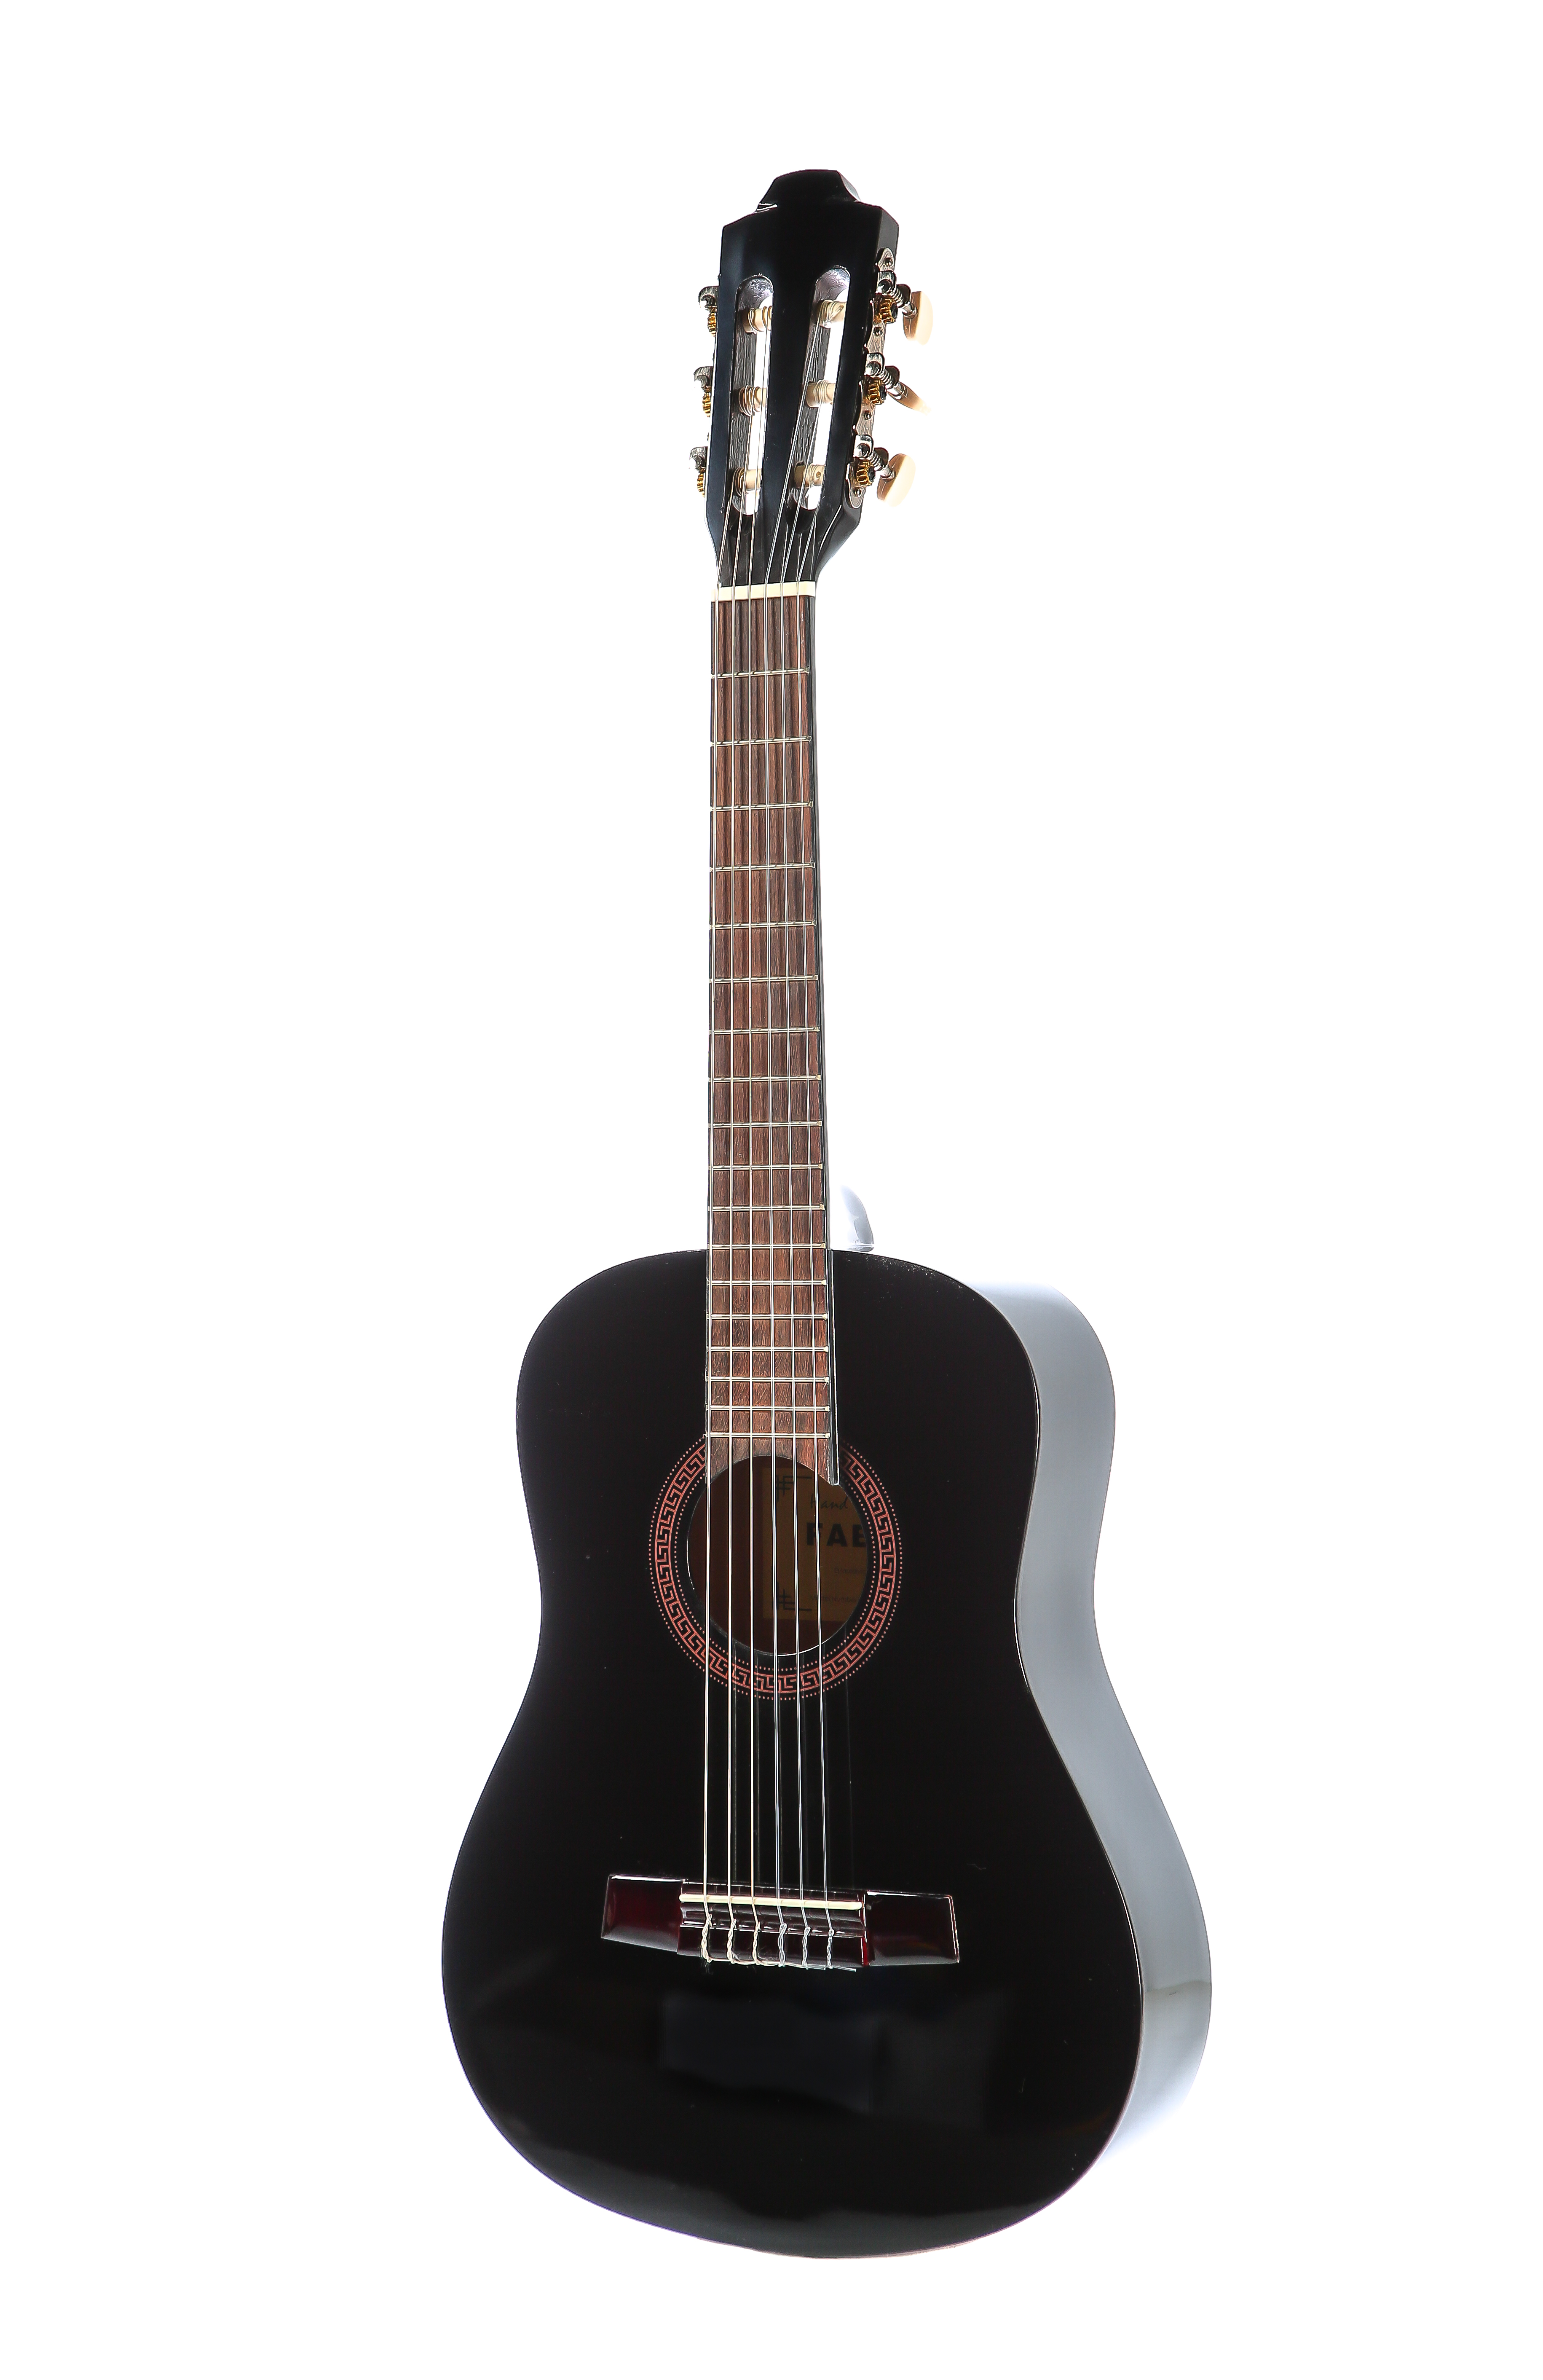 Классическая гитара Fabio FC02 BK